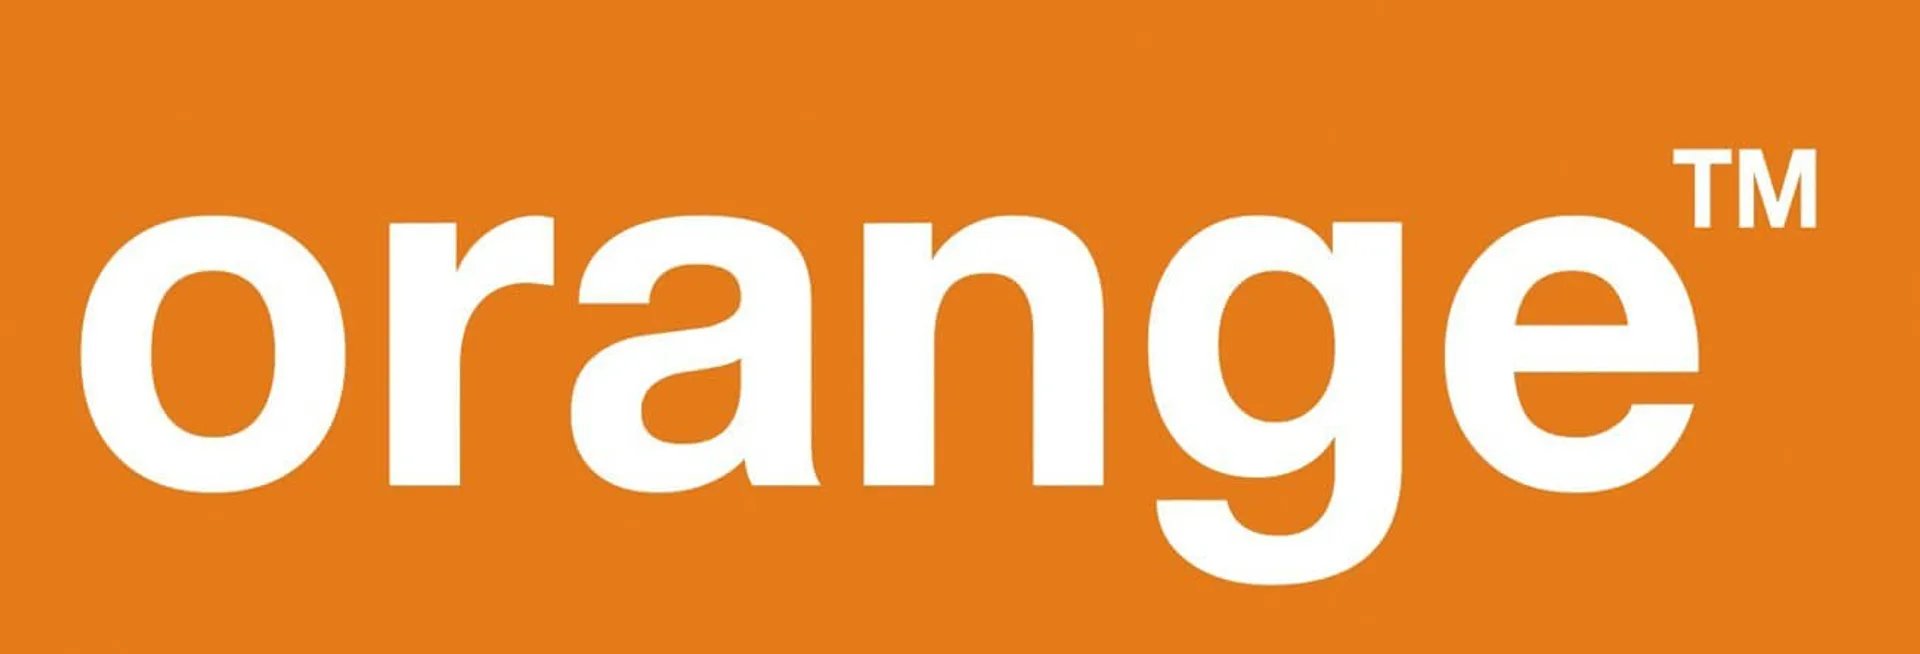 ORANGE logo